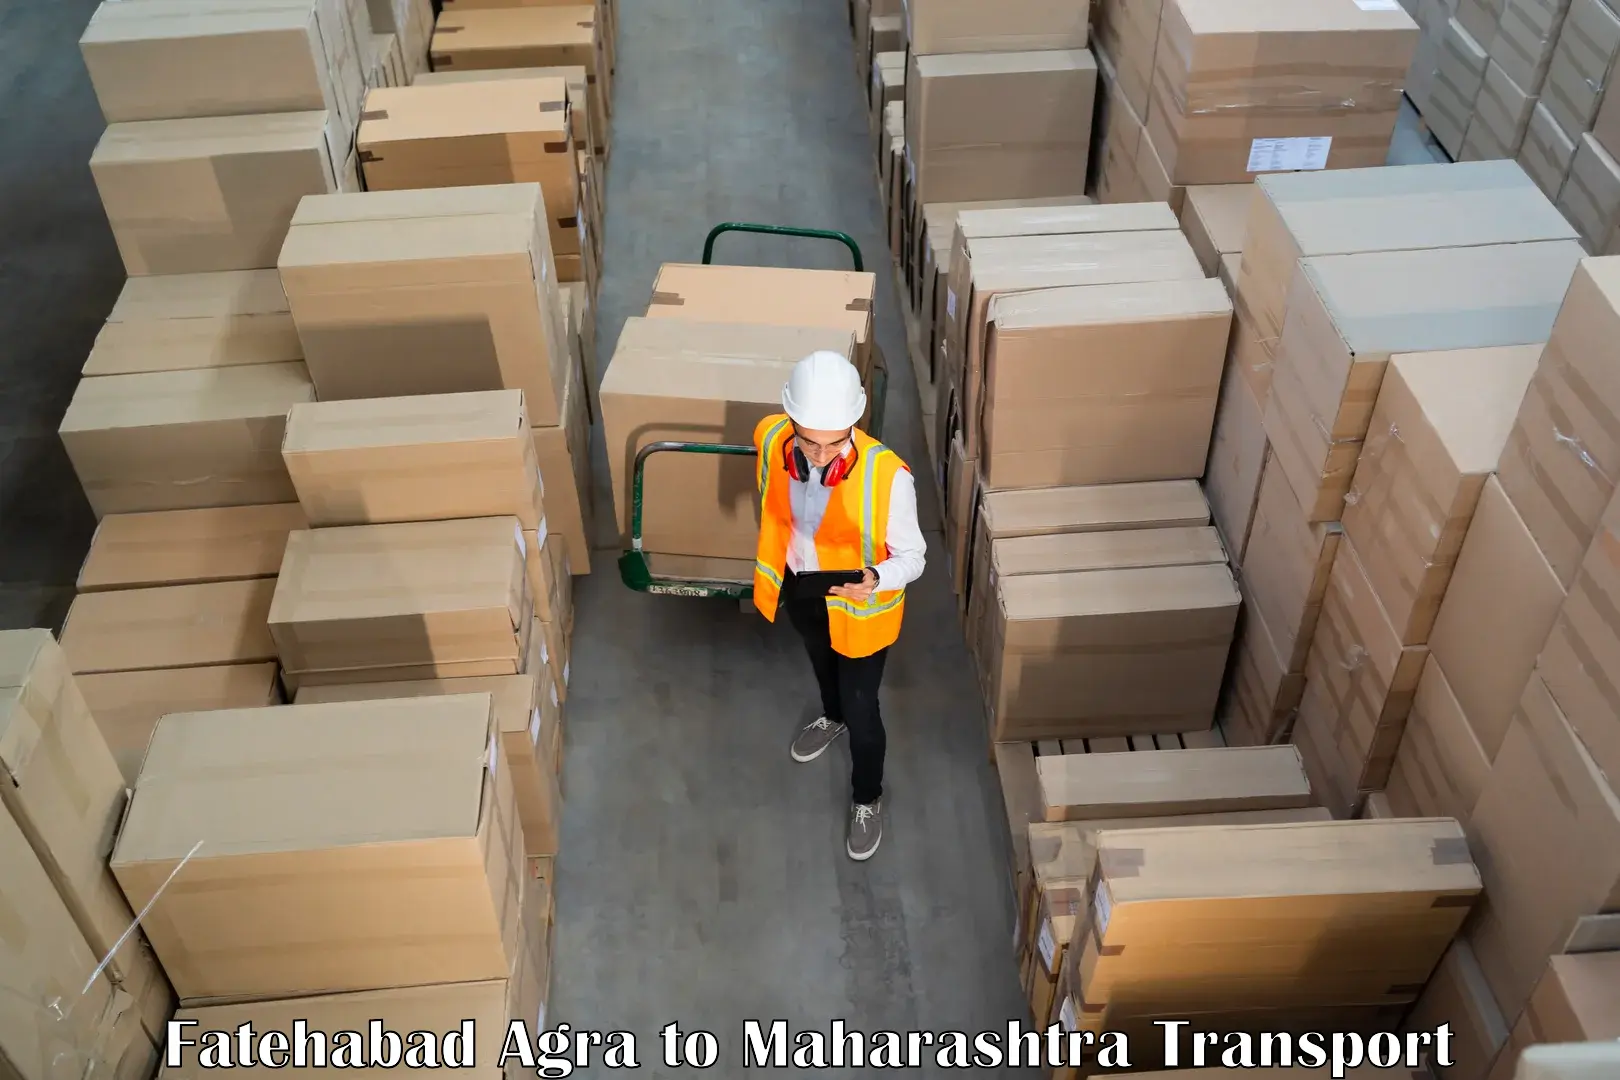 Delivery service Fatehabad Agra to Maharashtra